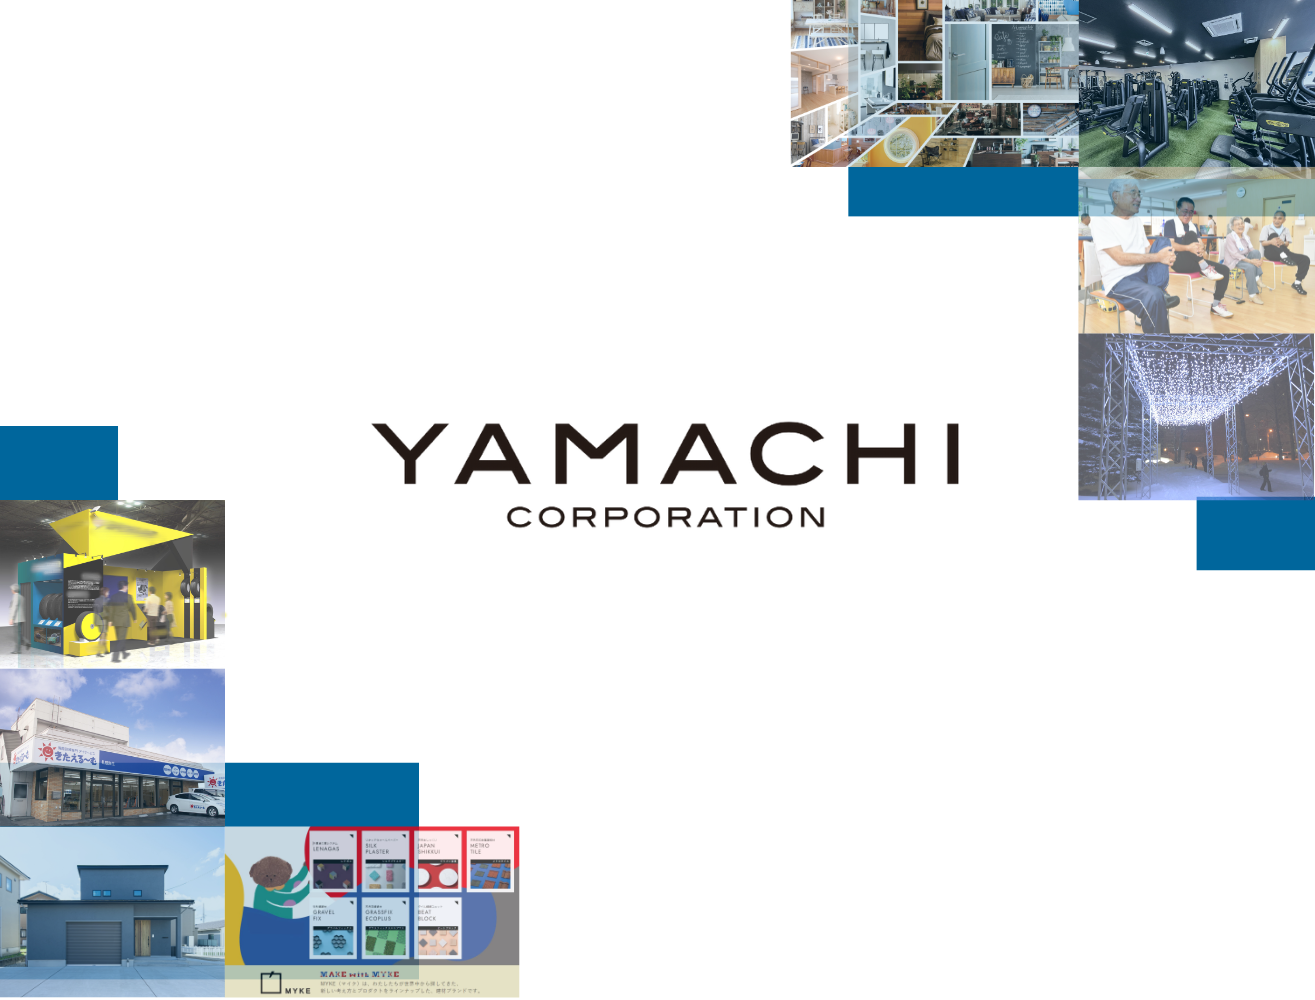 yamachi